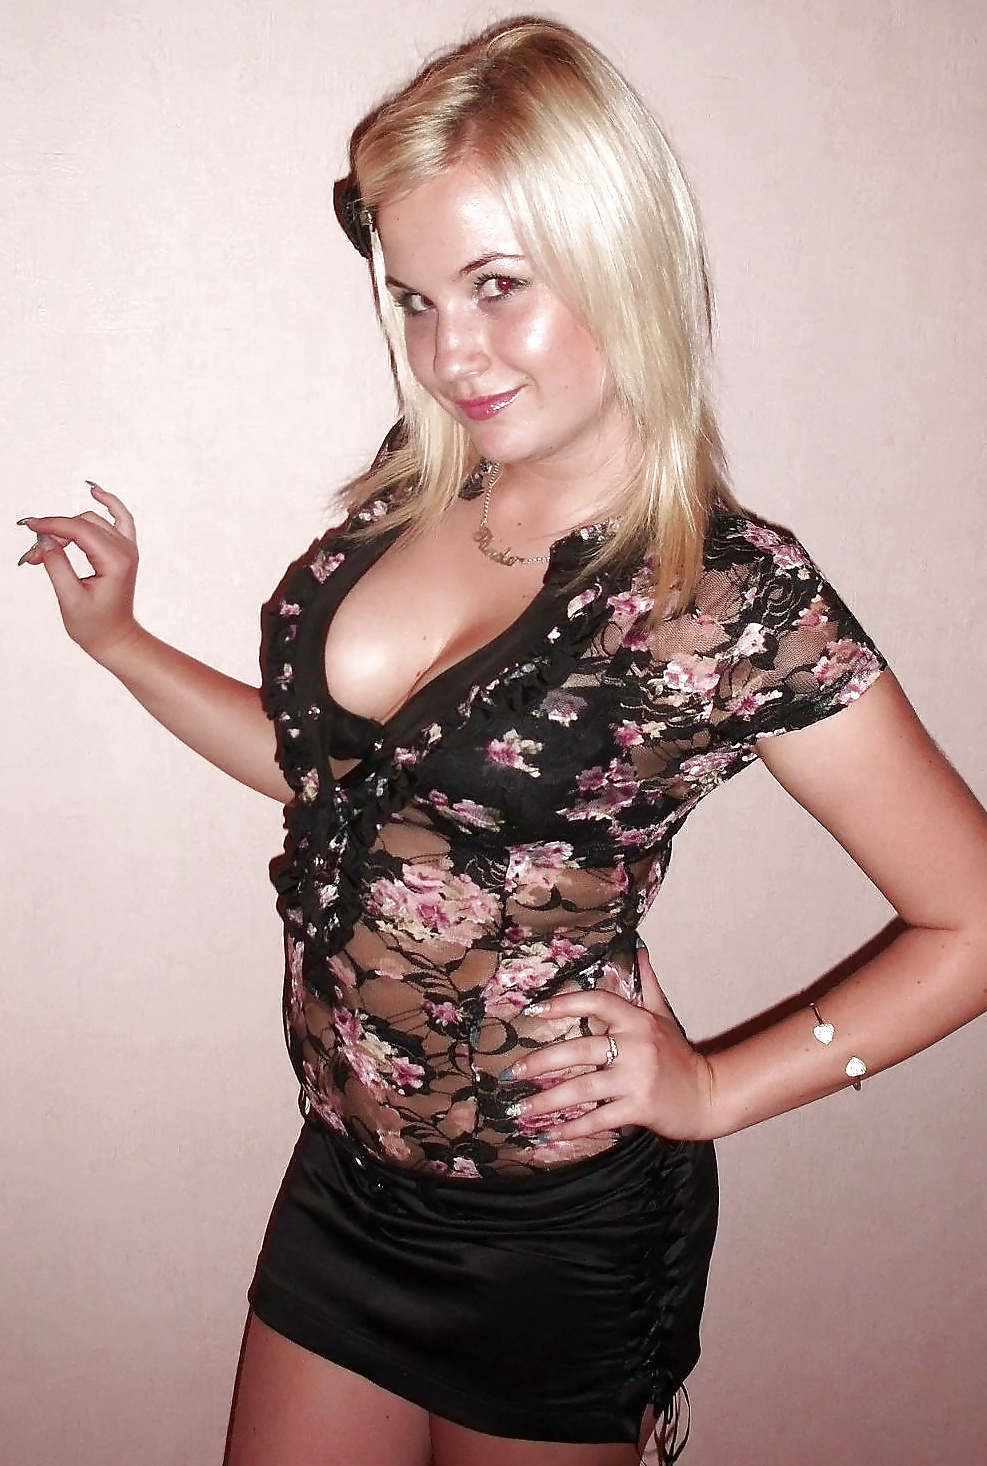 Amateur Blonde Teen Posing 2. #40061302